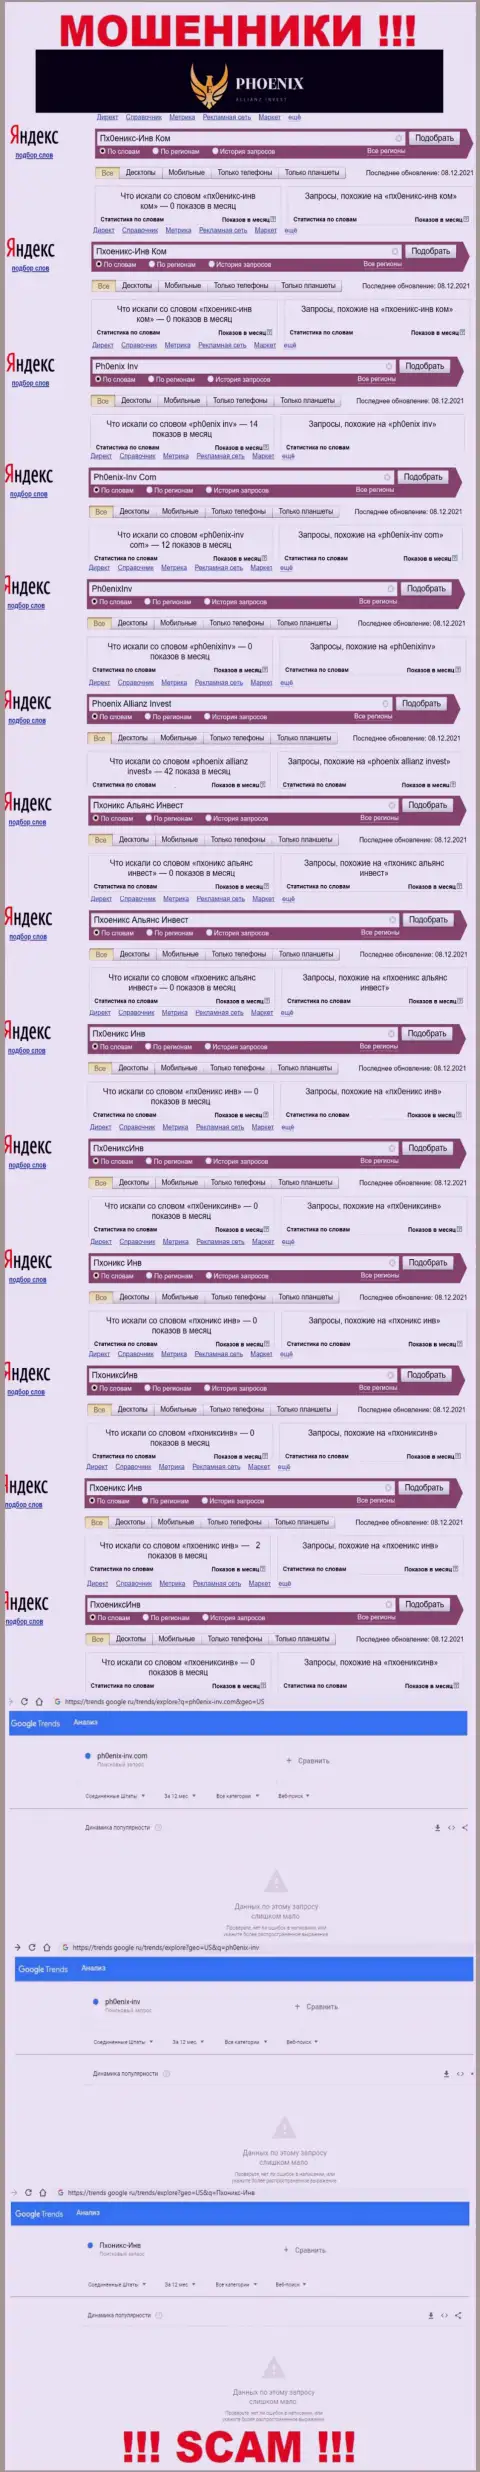 Скрин статистических данных поисковых запросов по мошеннической конторе Пхоеникс Инв